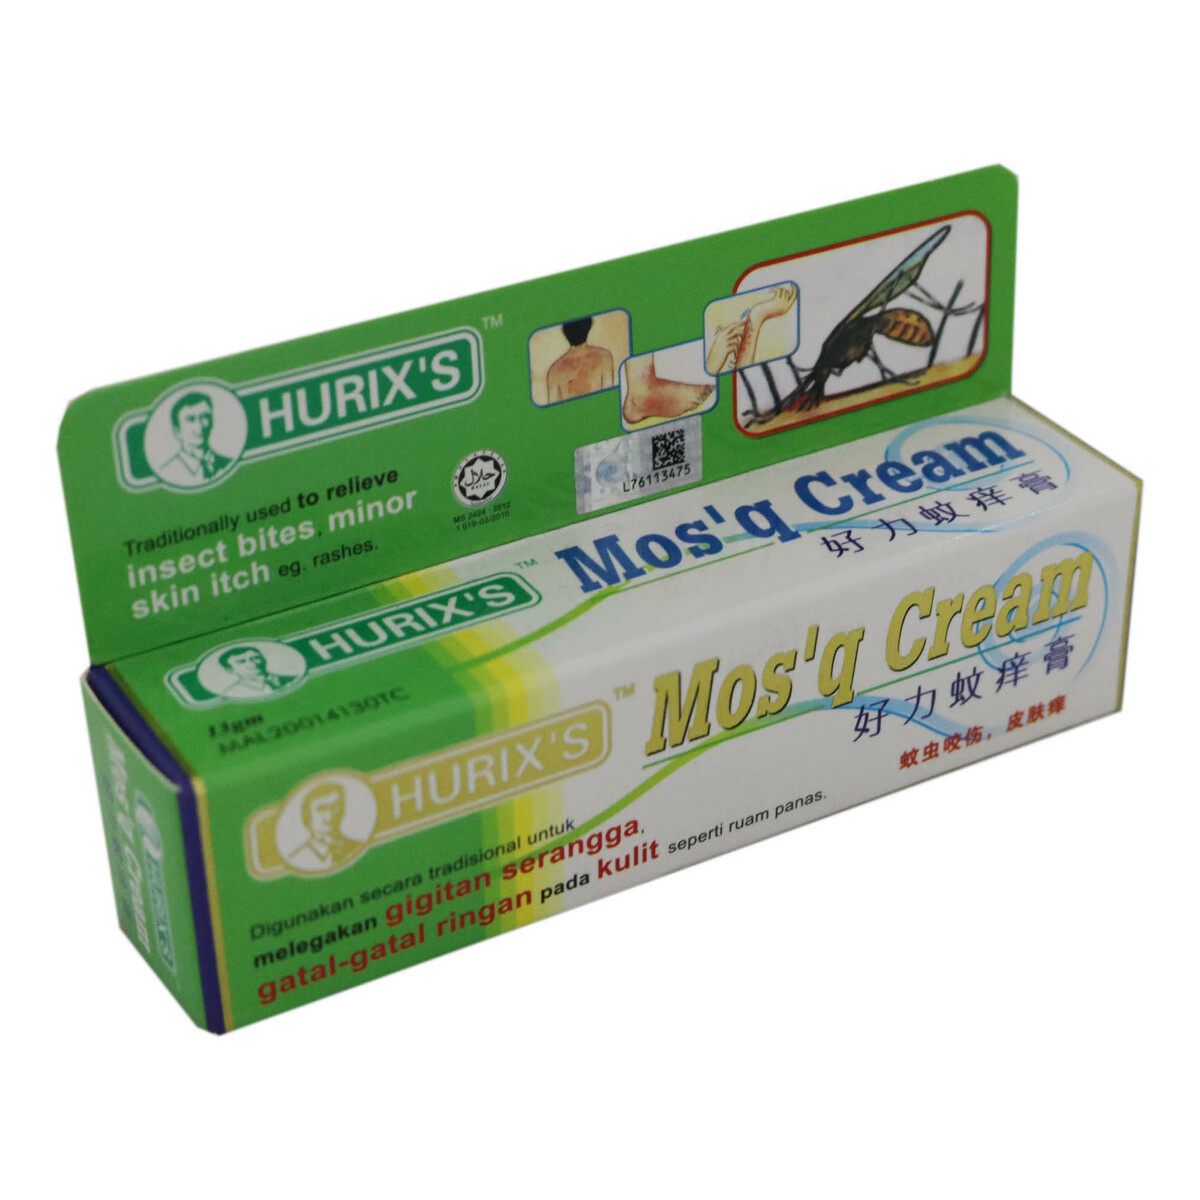 Hurix's Mos'Q Cream 13g